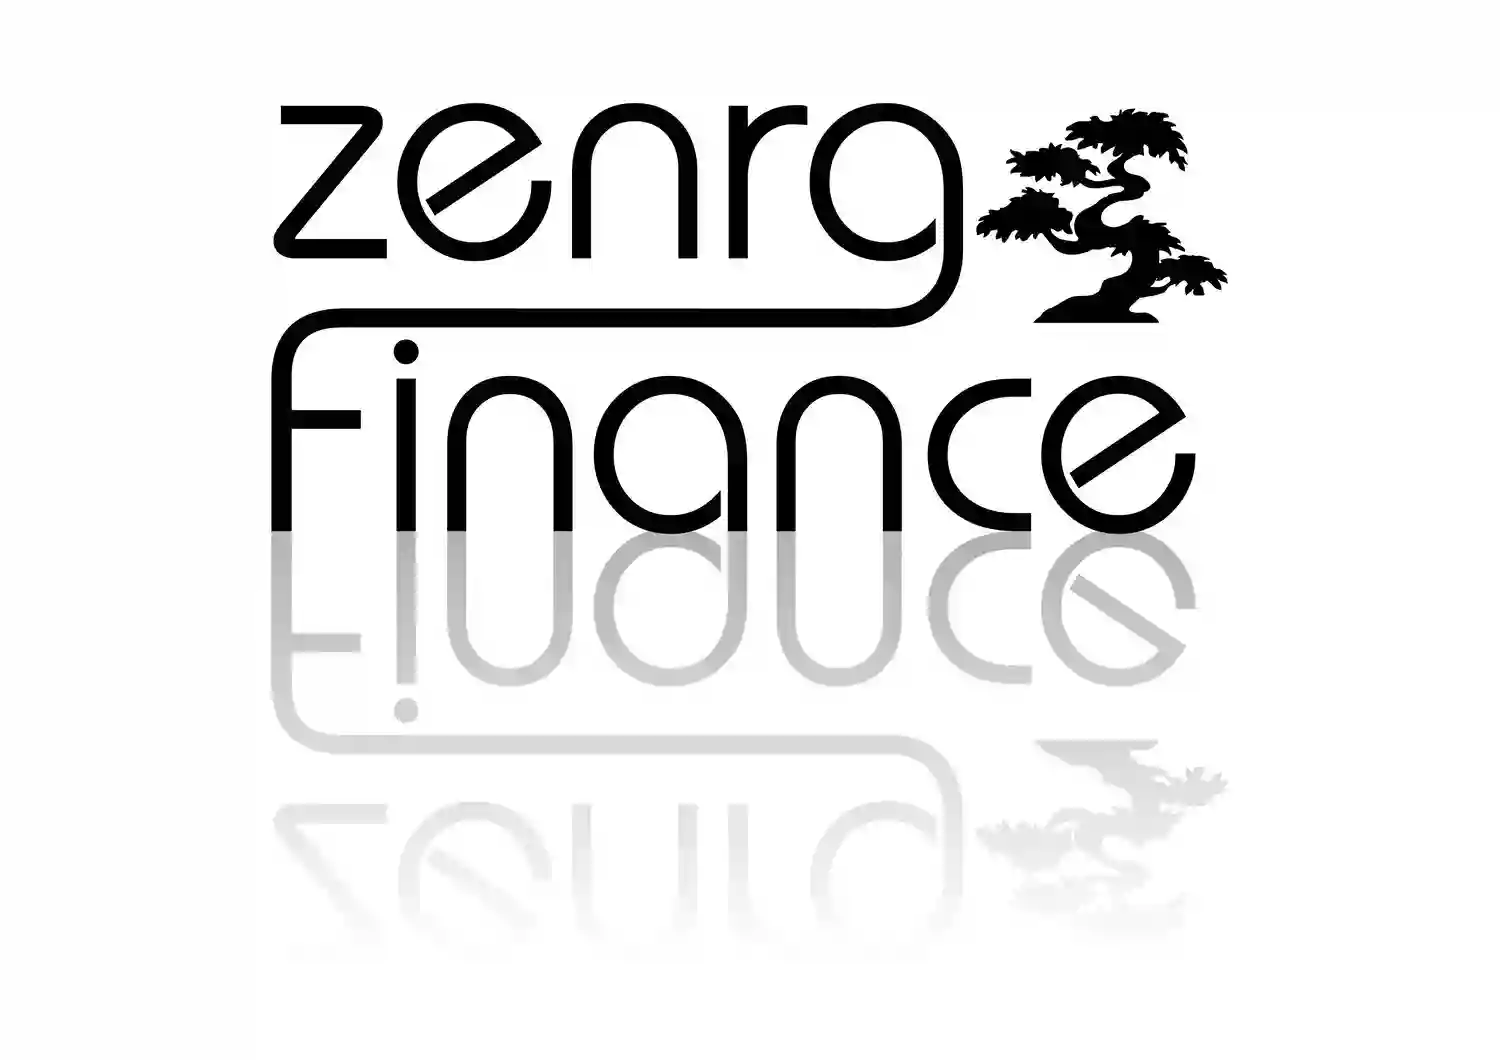 ZENRG Finance